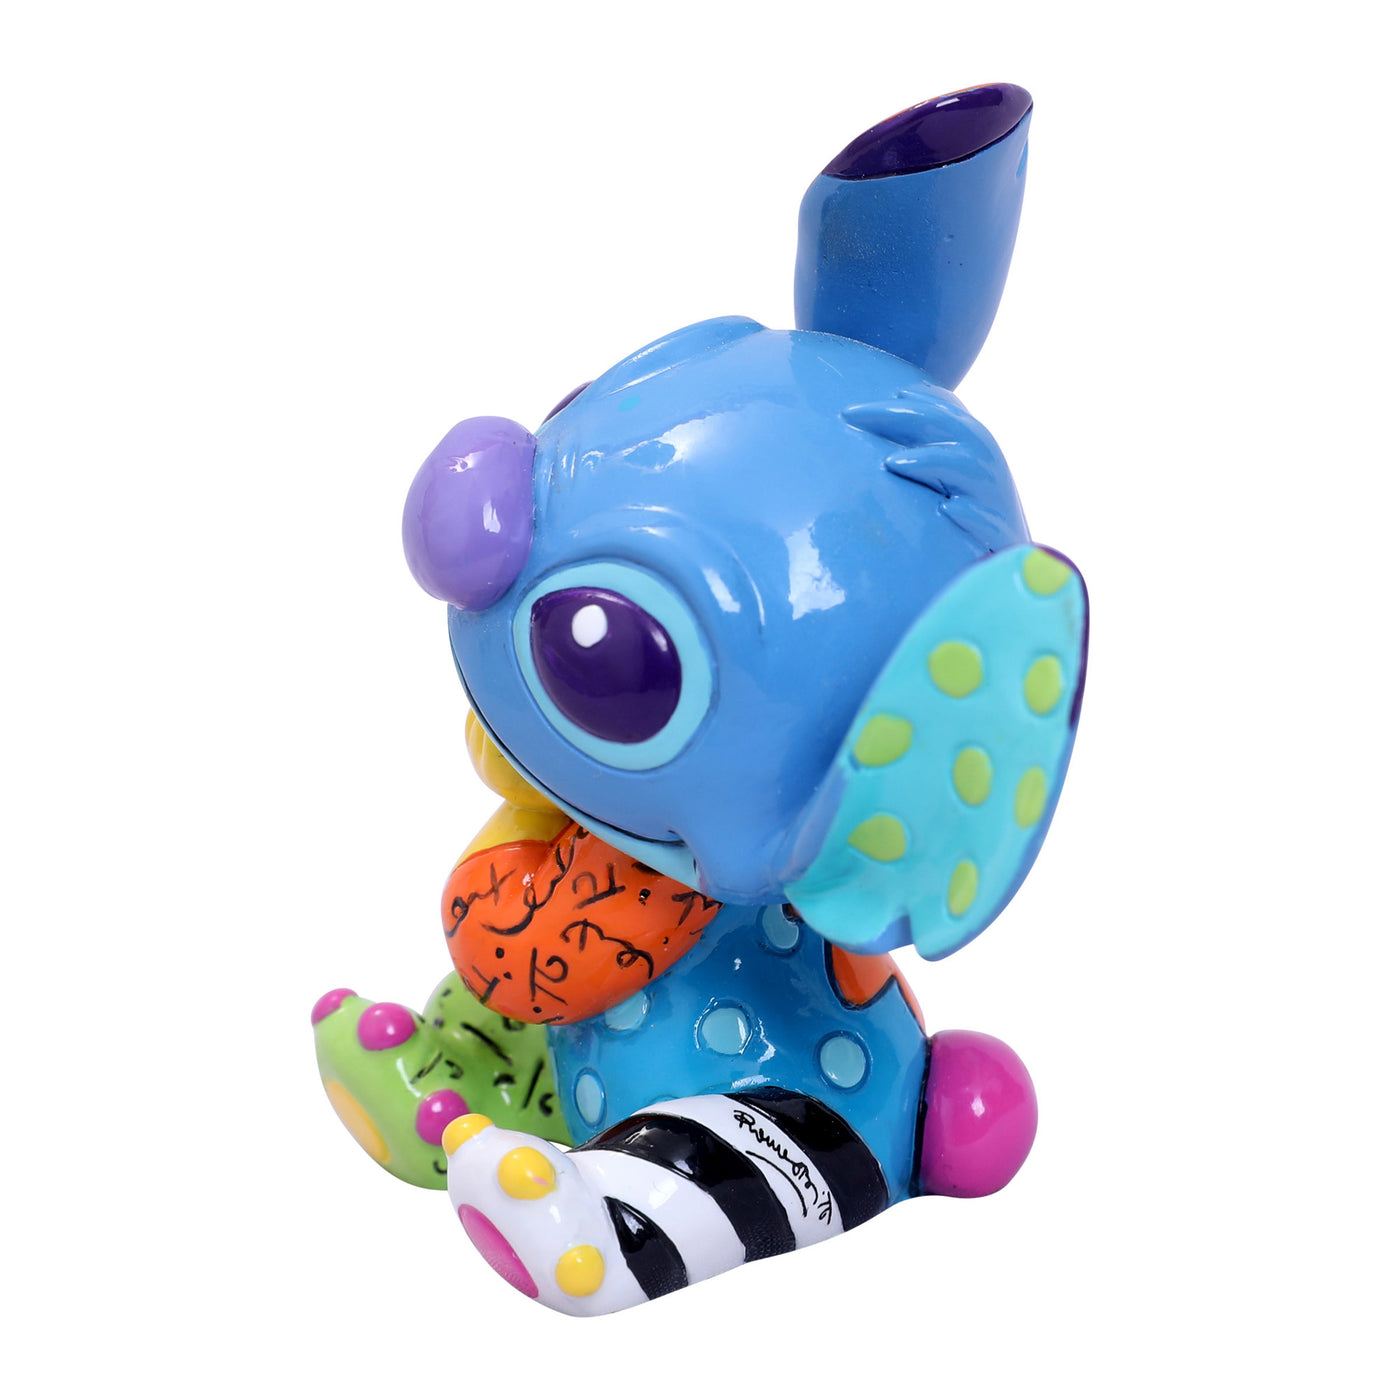 Disney Britto Mini Stitch Figurine New with Box